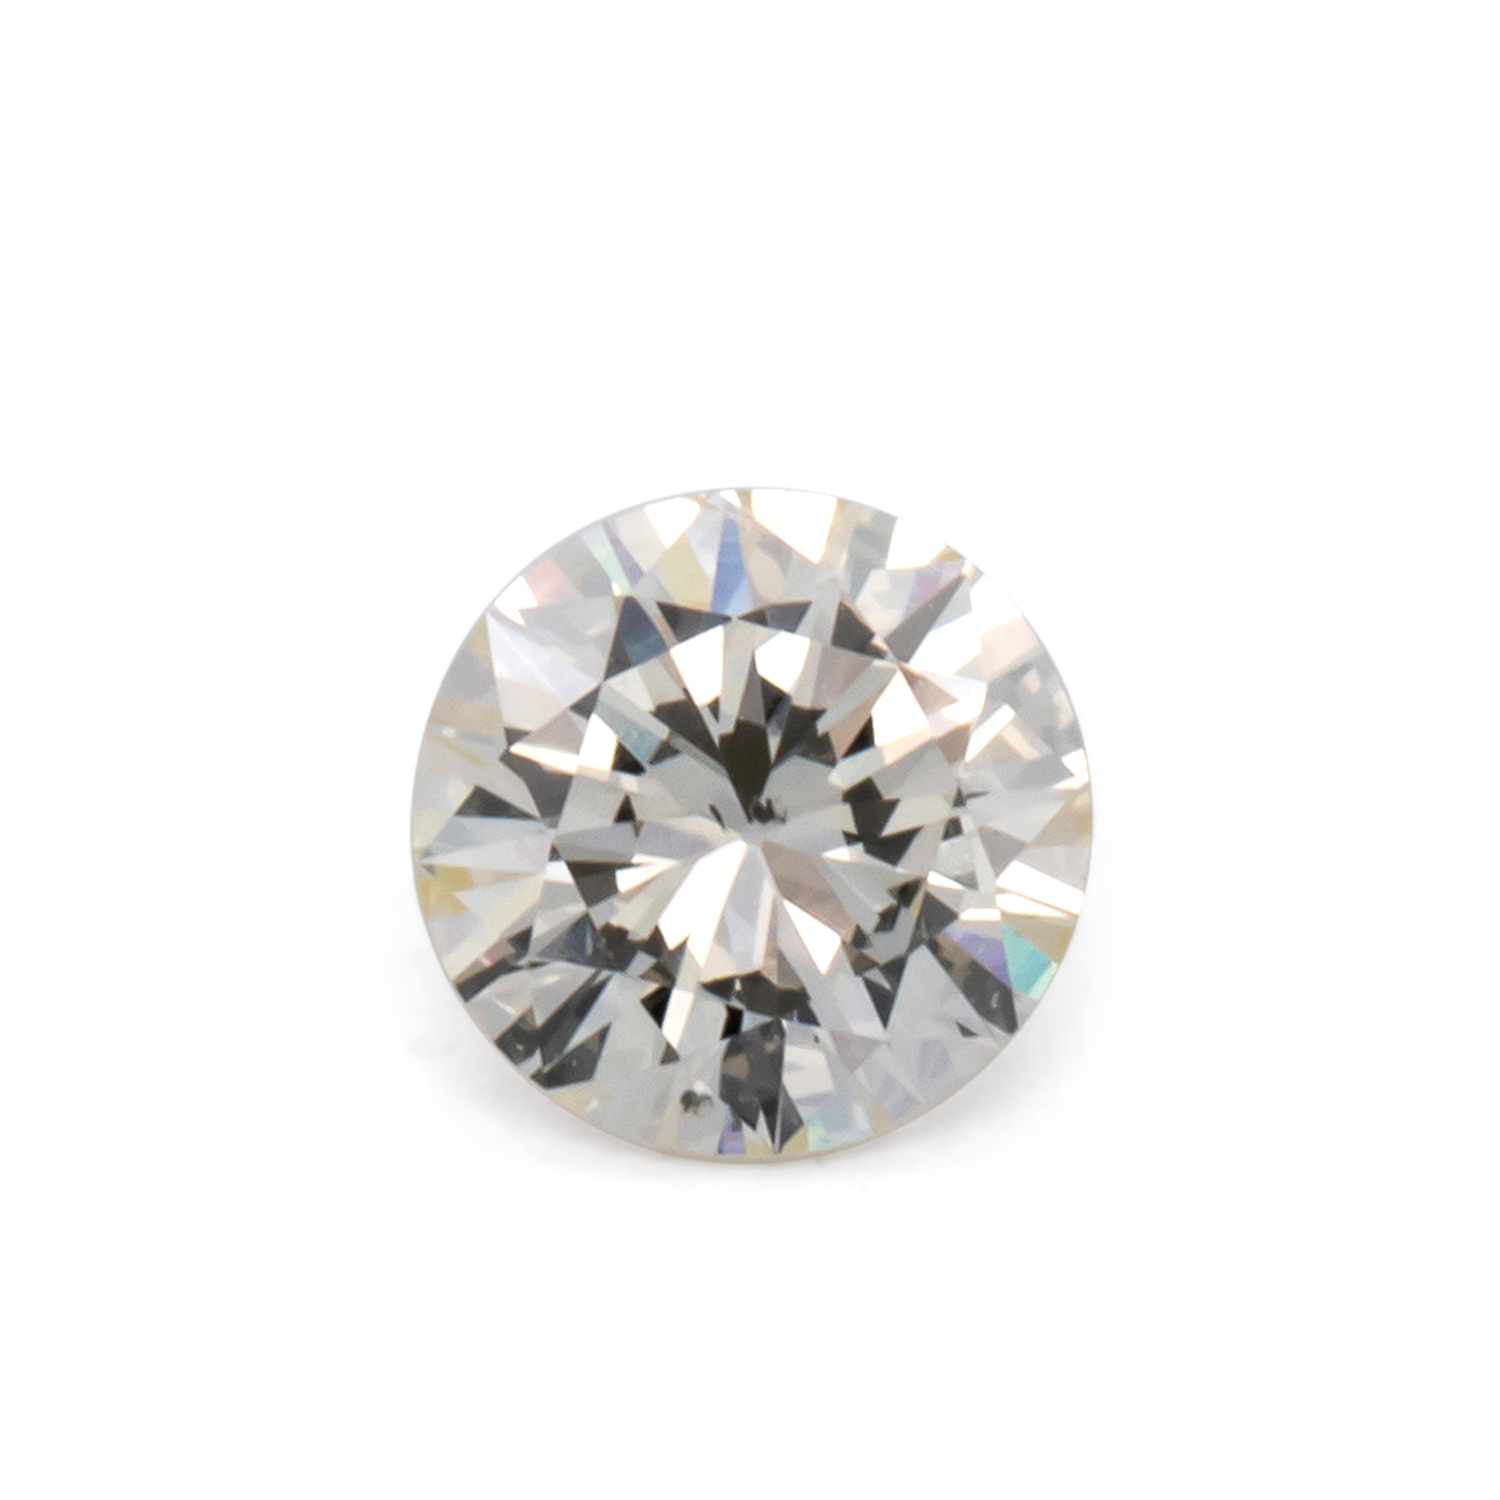 Diamant - leicht getönt gelb, rund, 5x5 mm, 0.45 cts, Nr. DT1015